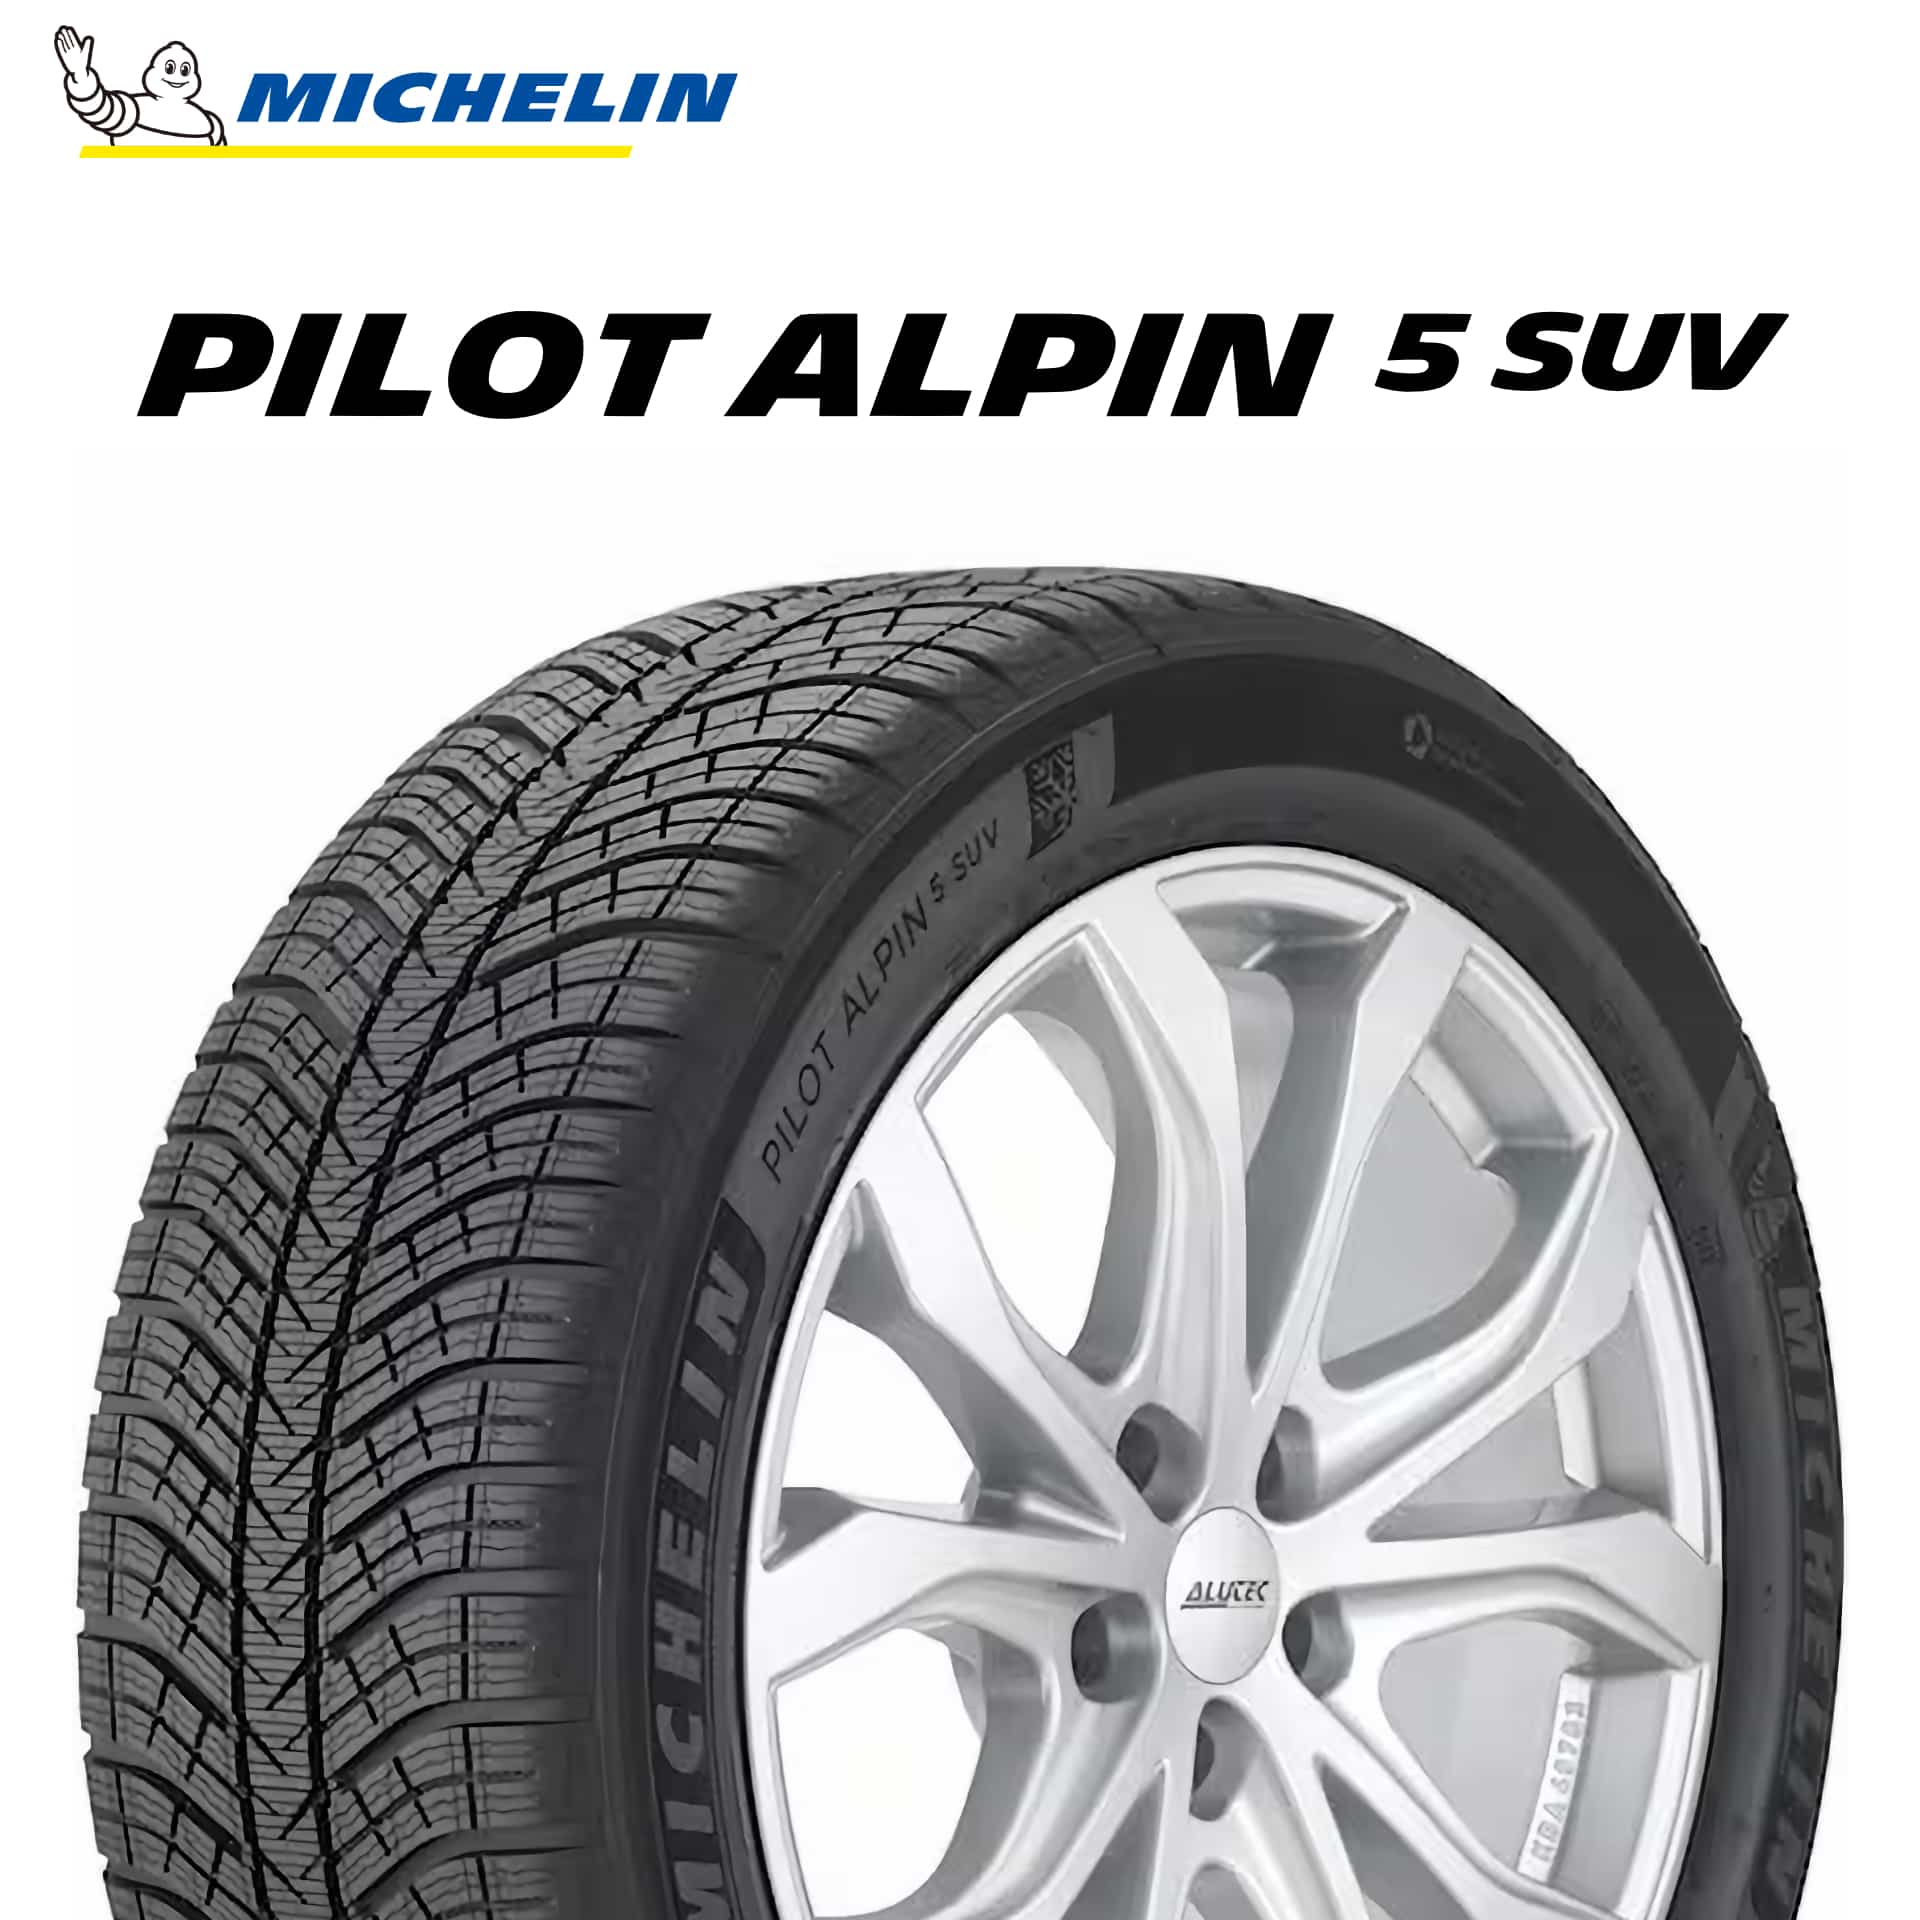 23年製 275/50R20 113V XL MO ミシュラン PILOT ALPIN 5 SUV (パイロット アルペン5 SUV) メルセデスベンツ承認タイヤ Gクラス (GLE) 20インチ 新品